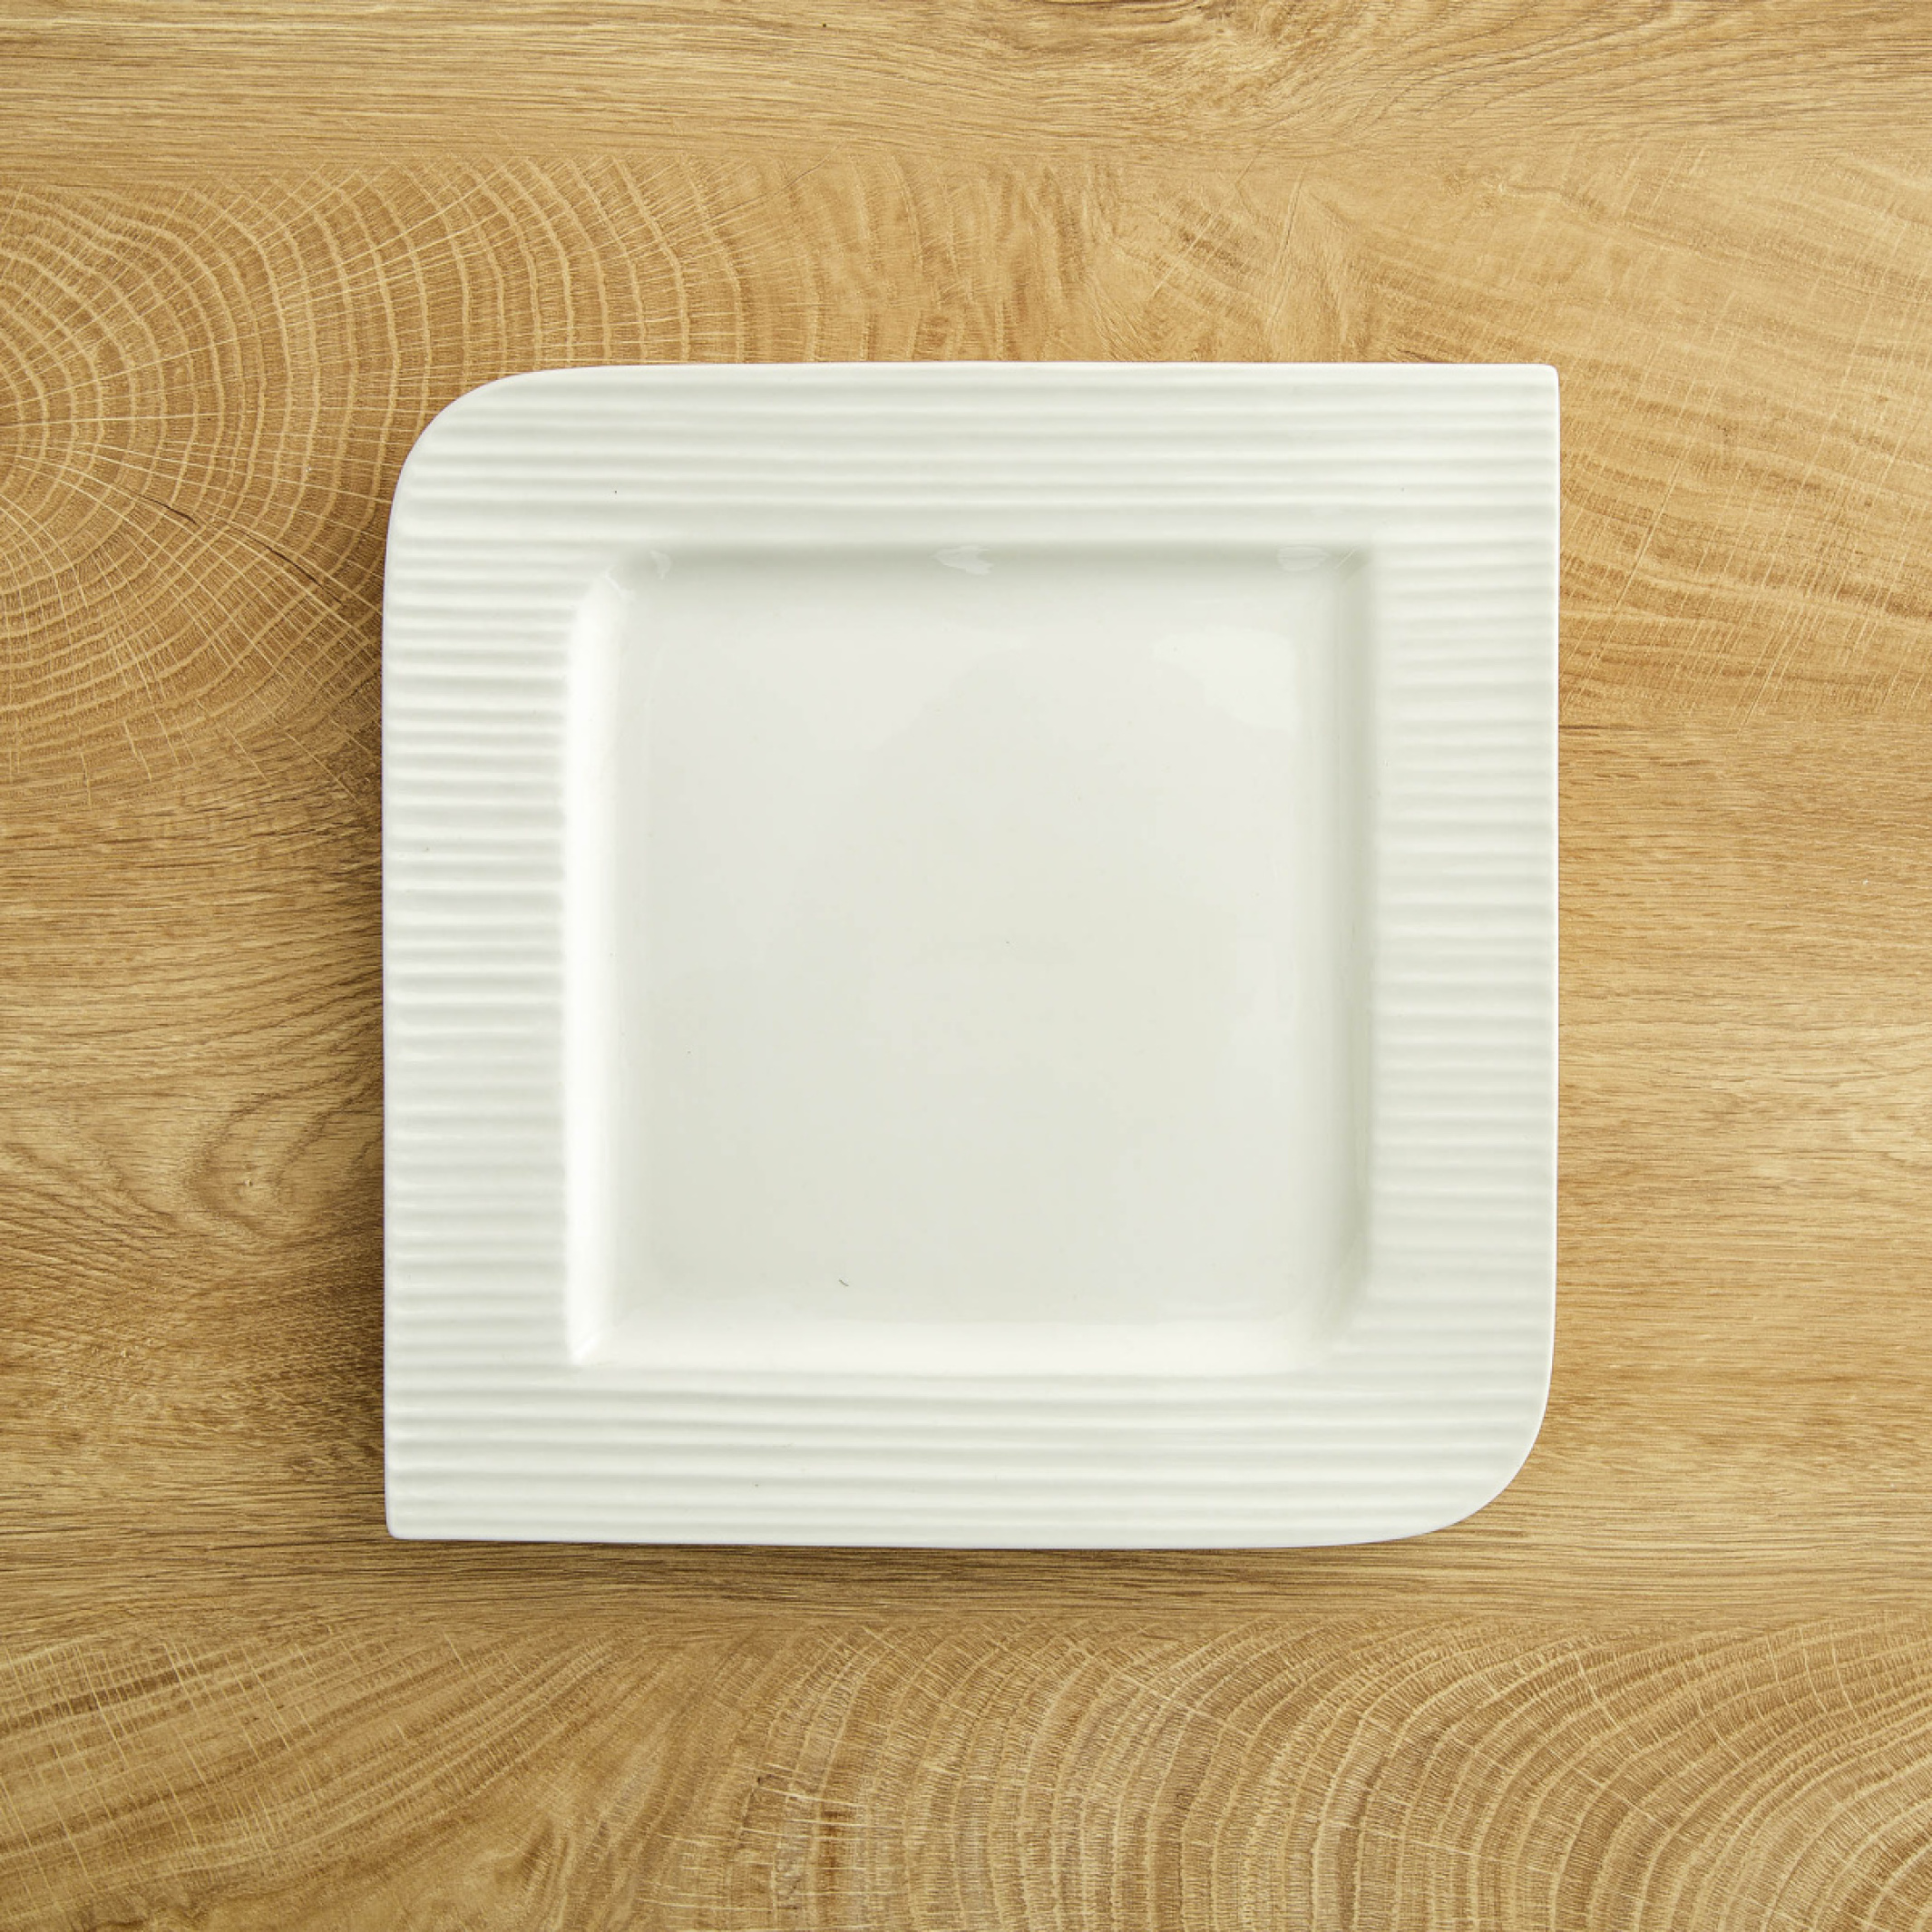 Marshmallow Porcelain Dinner Plate - 25.5cm